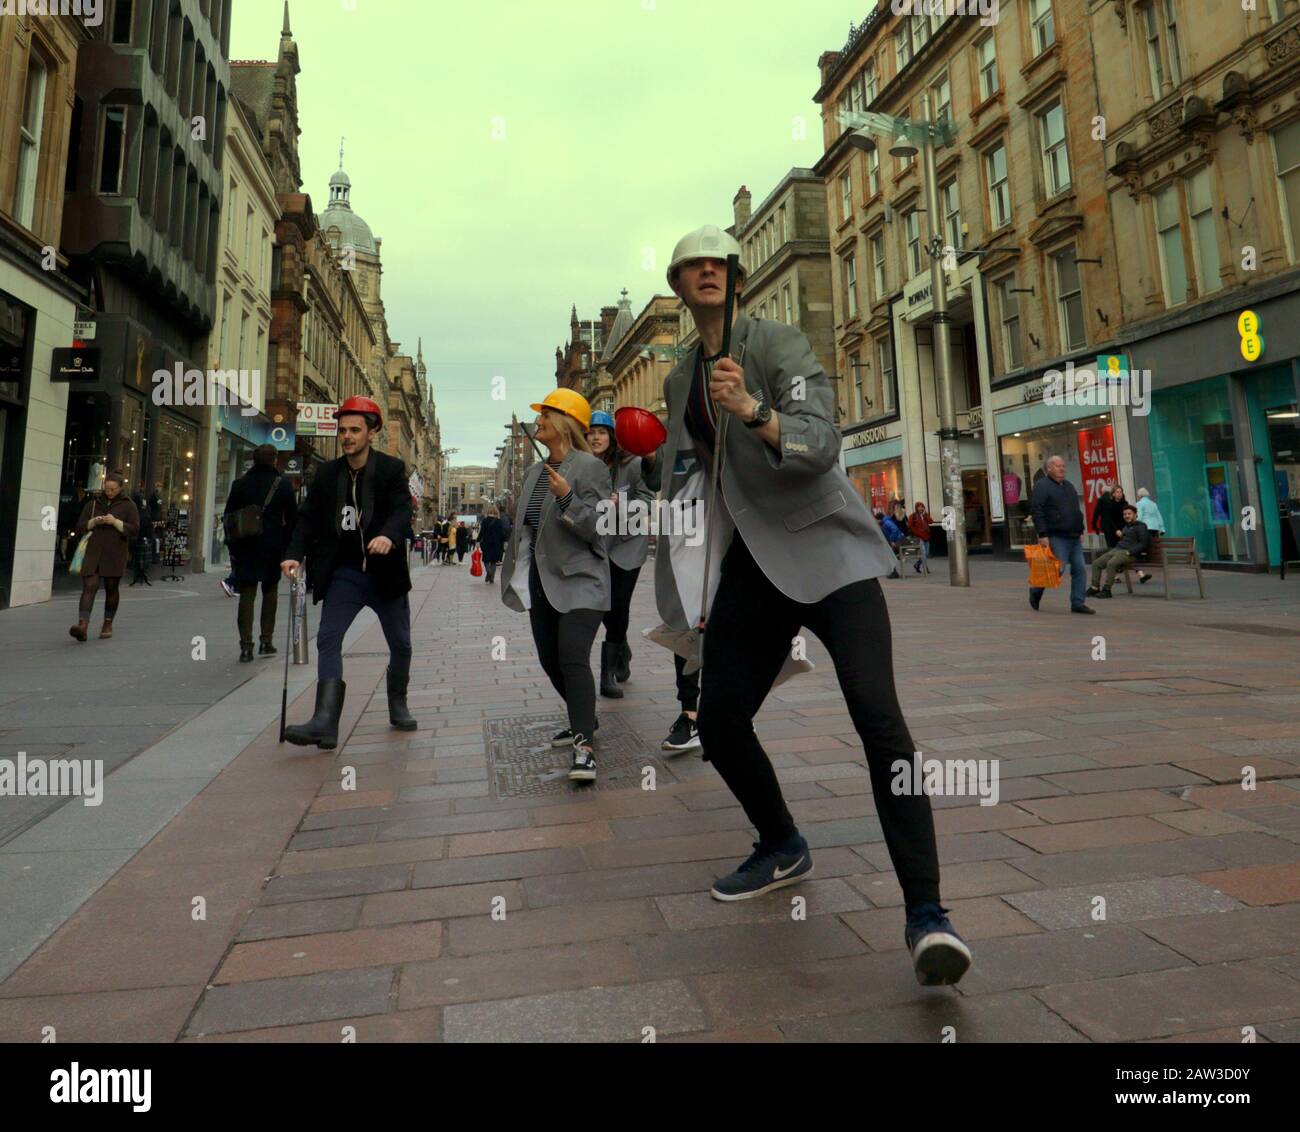 Glasgow, Schottland, Großbritannien, 6. Februar 2020: Großbritannien Wetter: Sonnige Meile, die das Einkaufszentrum der Buchanan Street ist, sah Straßentheater auf seiner Länge als "SURGE", eine Gruppe, die Straßenkunst, physisches Theater und Zirkus aufführt, genossen das gute Wetter. Copywrite Gerard Ferry/Alamy Live News Stockfoto